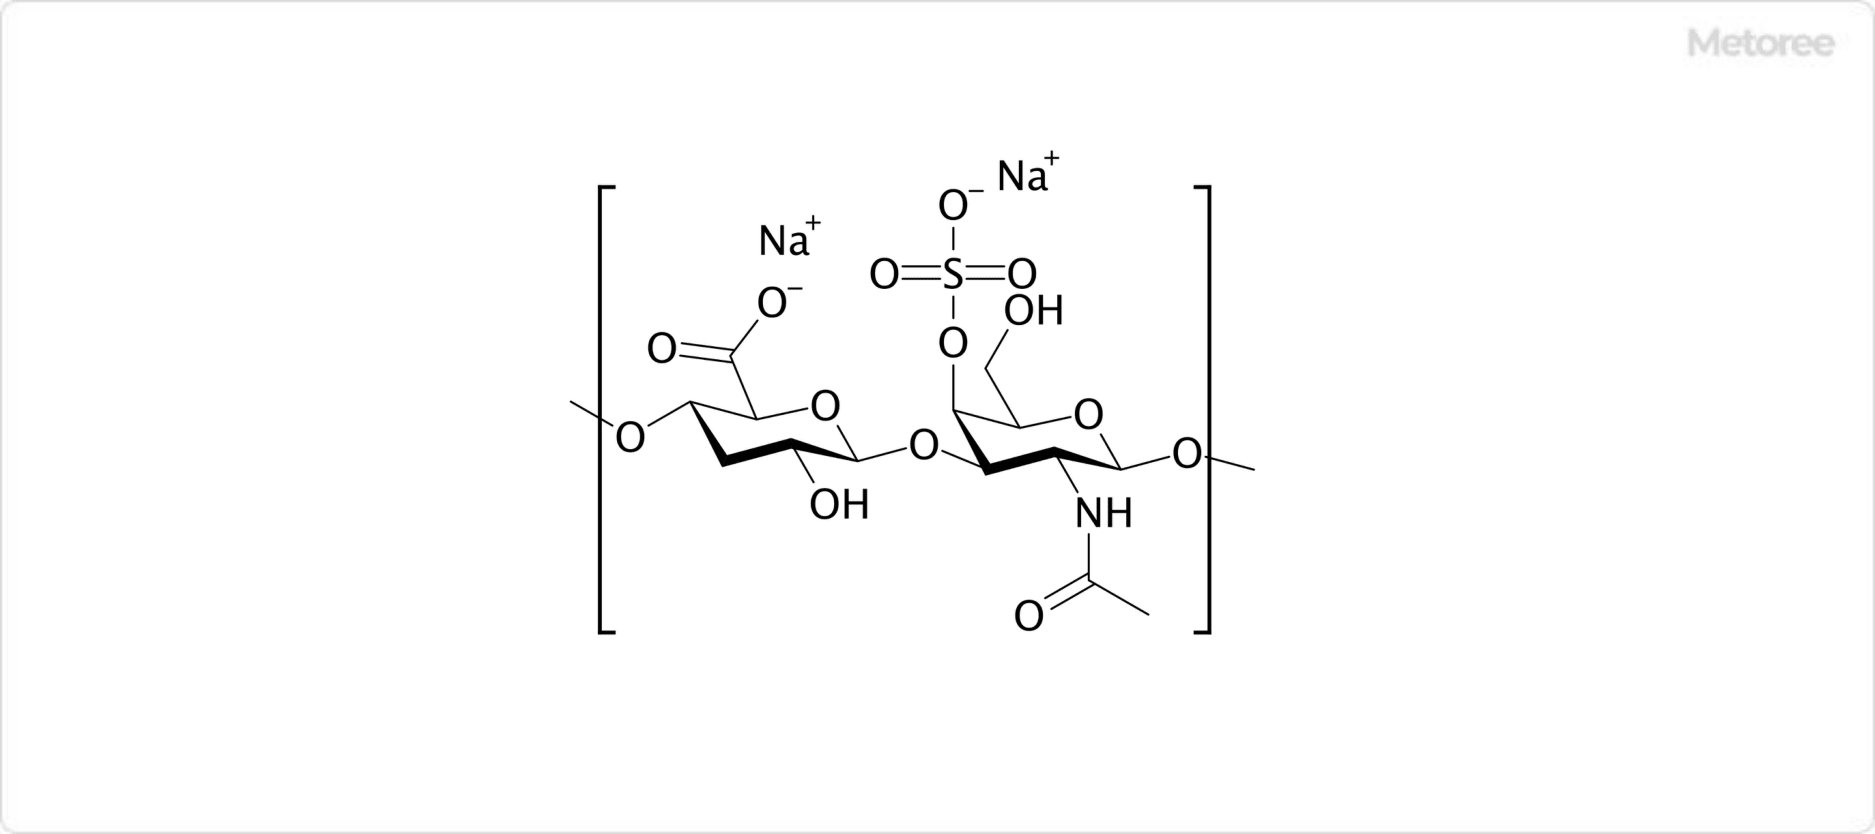 コンドロイチン硫酸ナトリウムの構造 (コンドロイチン硫酸ナトリウムA)